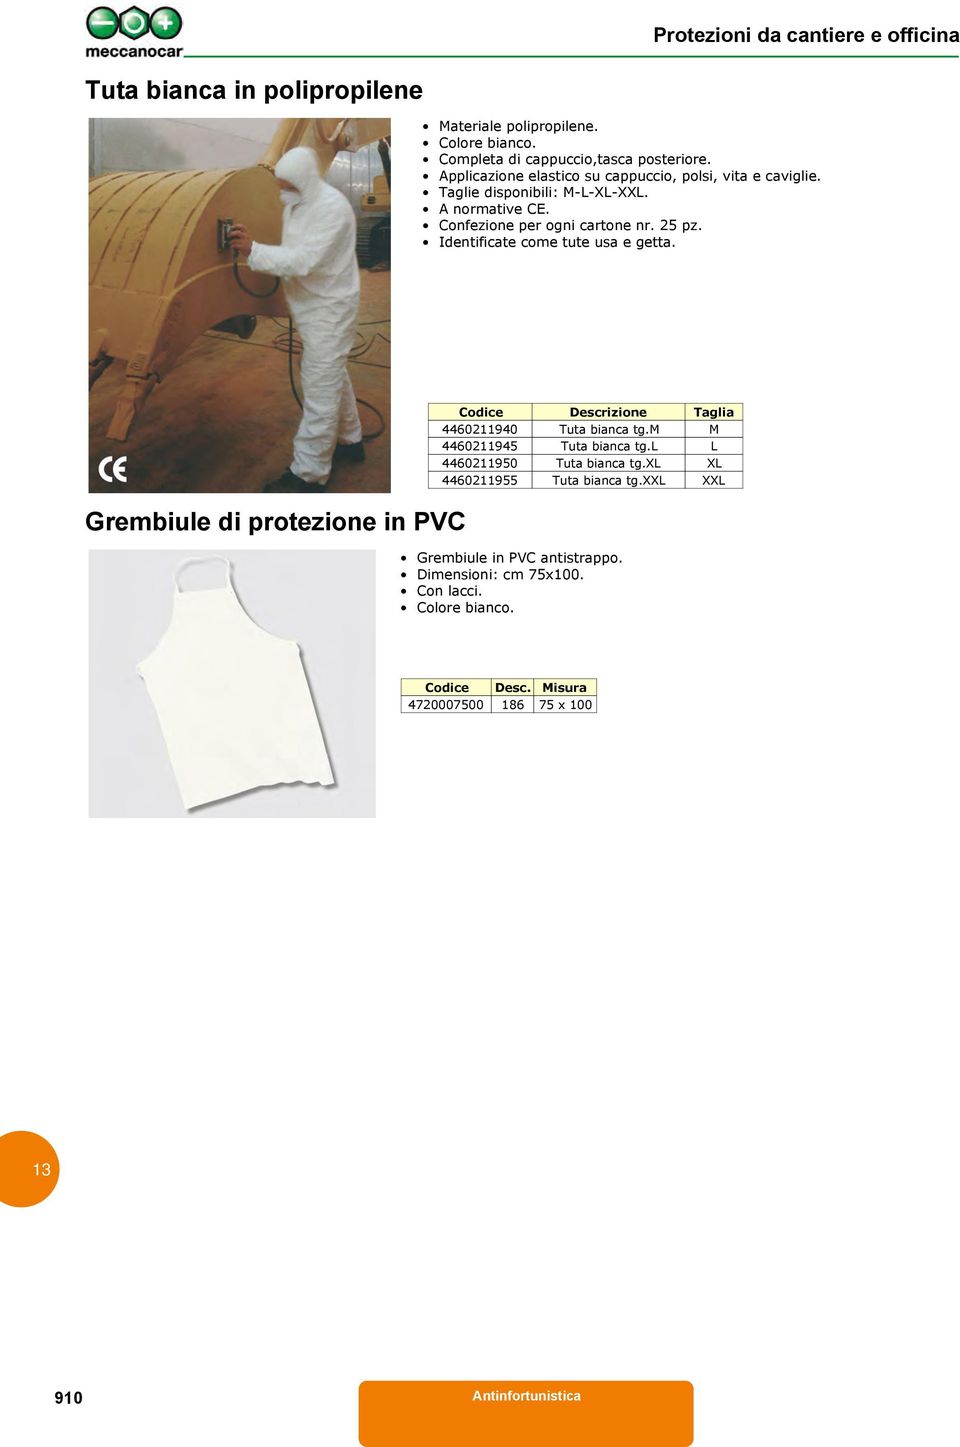 Identificate come tute usa e getta. Grembiule di protezione in PVC Codice Descrizione Taglia 4460211940 Tuta bianca tg.